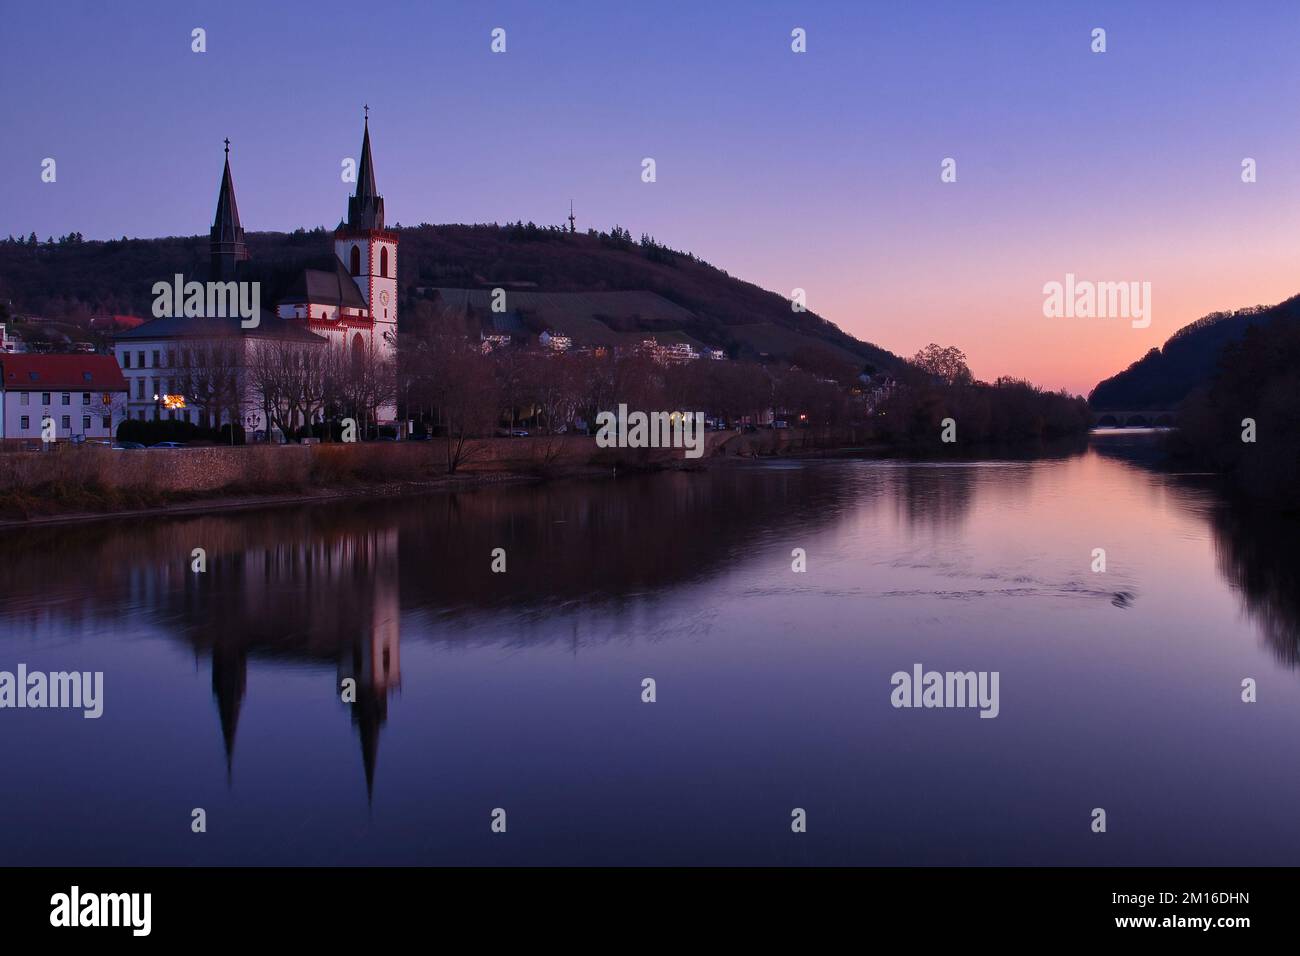 Bingen am Rhein, Allemagne - 10 janvier 2021: Basilique Saint-Laurent Martin et d'autres bâtiments et leurs réflexions dans le Rhin pendant un hiver coloré Banque D'Images